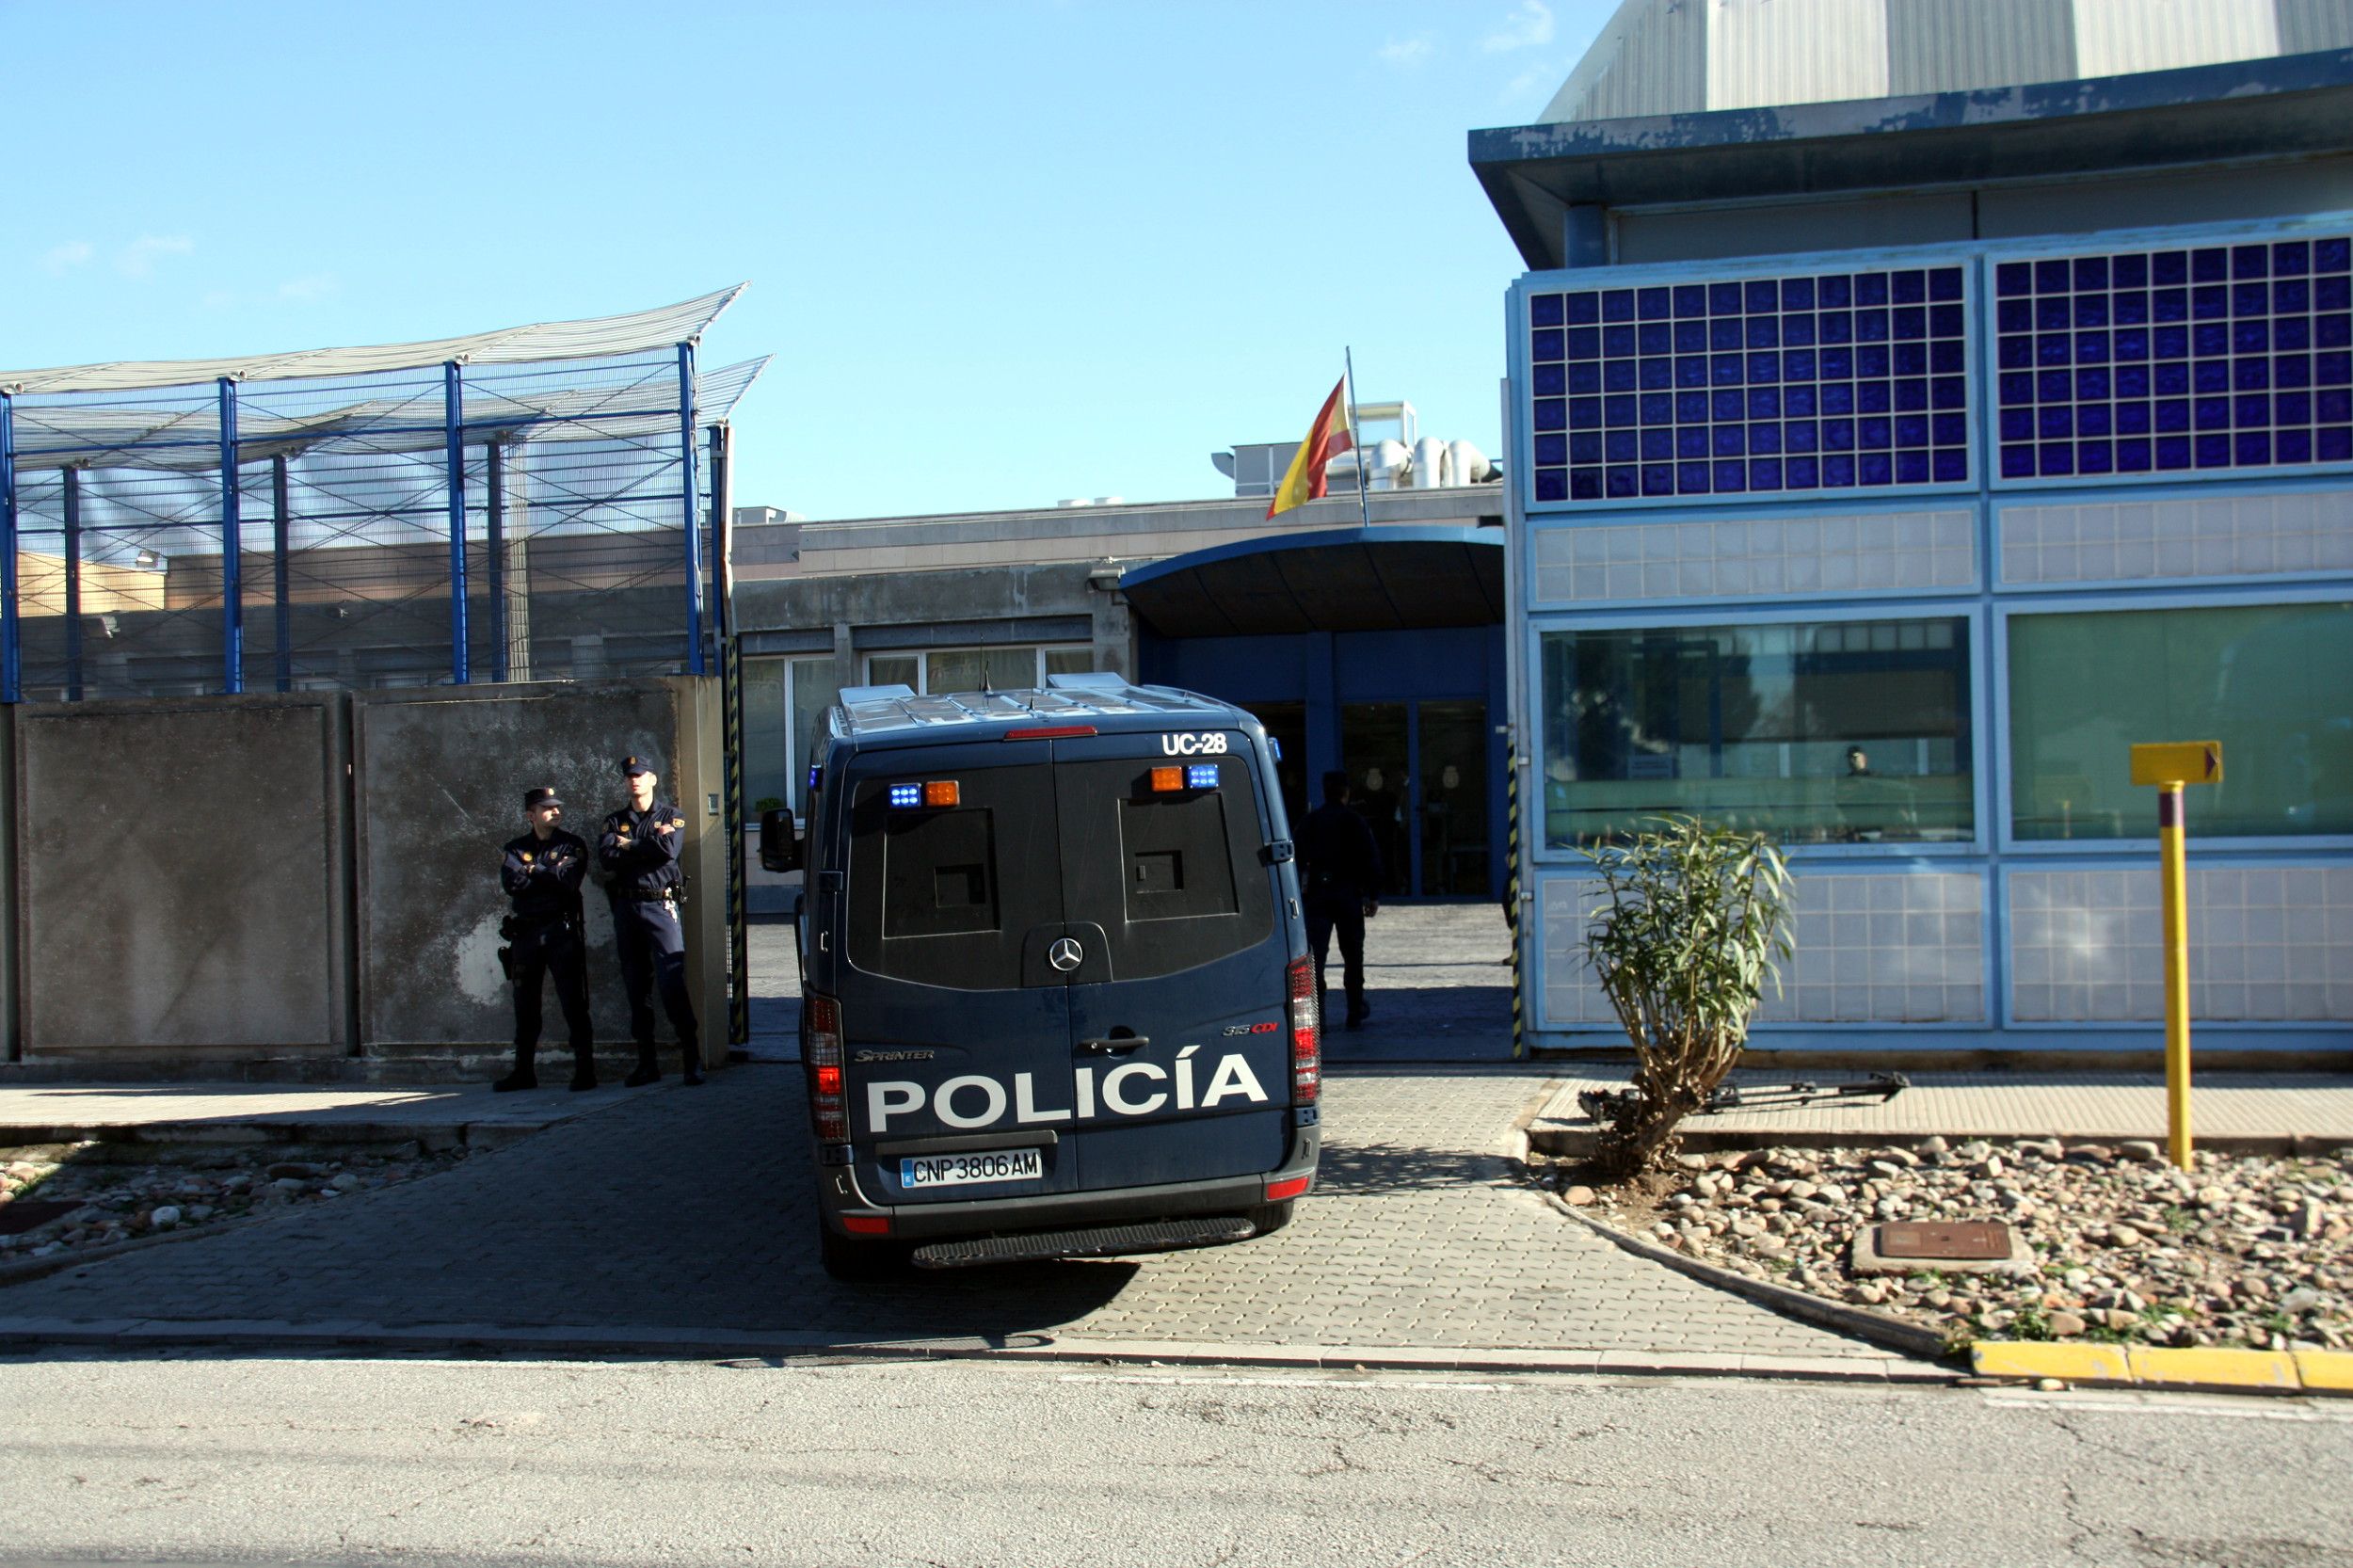 40 internos del CIE de la Zona Franca harán huelga de hambre "indefinida"